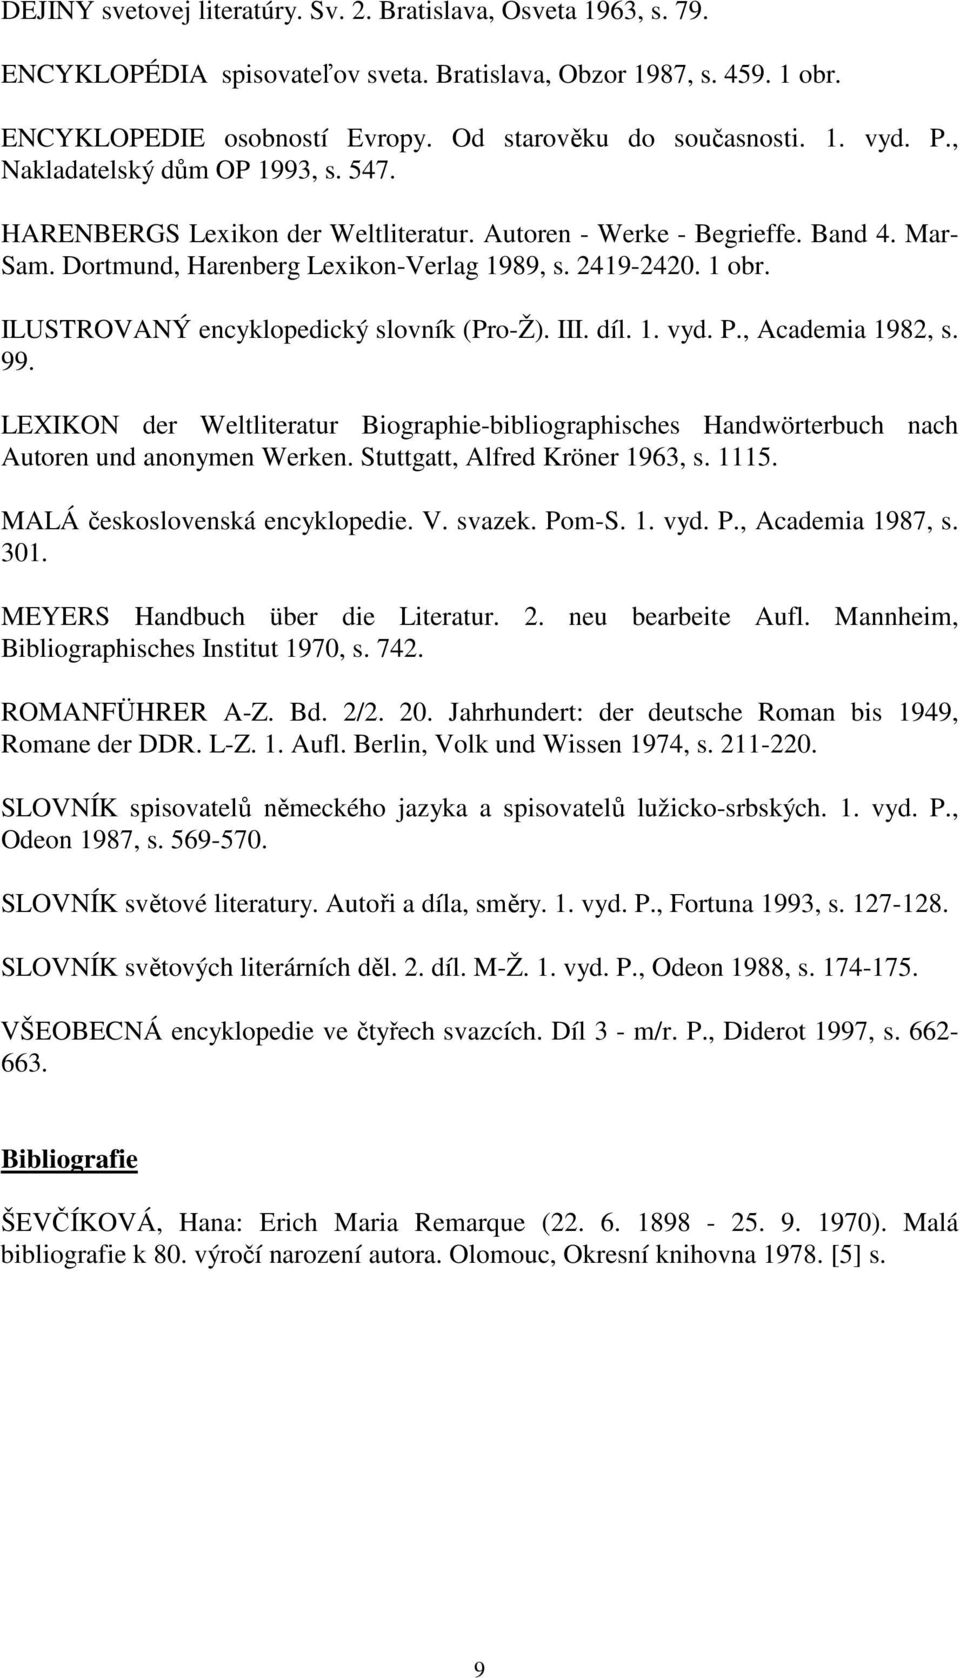 ILUSTROVANÝ encyklopedický slovník (Pro-Ž). III. díl. 1. vyd. P., Academia 1982, s. 99. LEXIKON der Weltliteratur Biographie-bibliographisches Handwörterbuch nach Autoren und anonymen Werken.